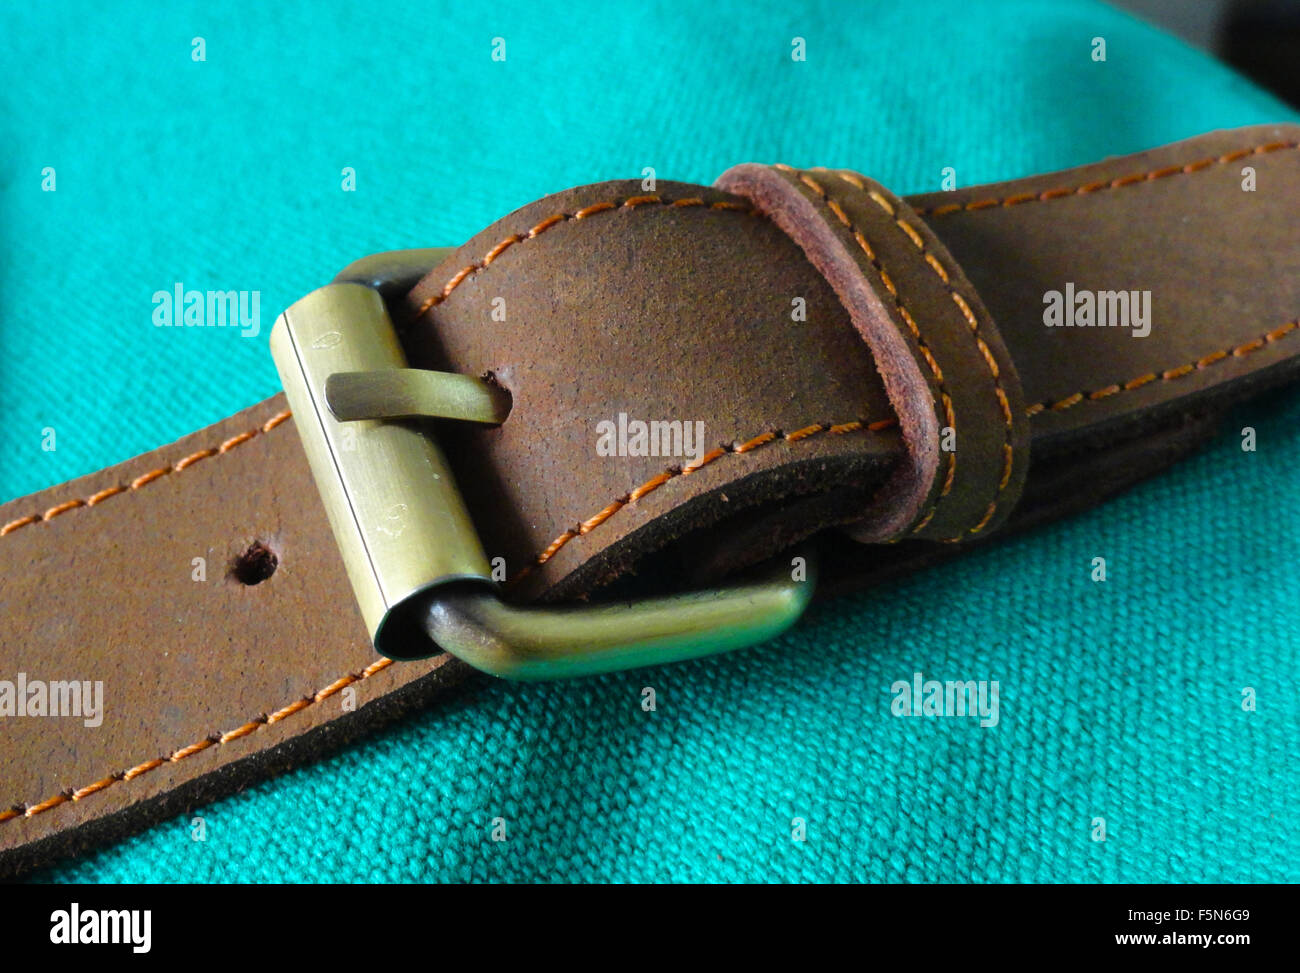 Brauner Ledergürtel mit Messing-Schnalle auf grün Baumwolltuch Stockfoto